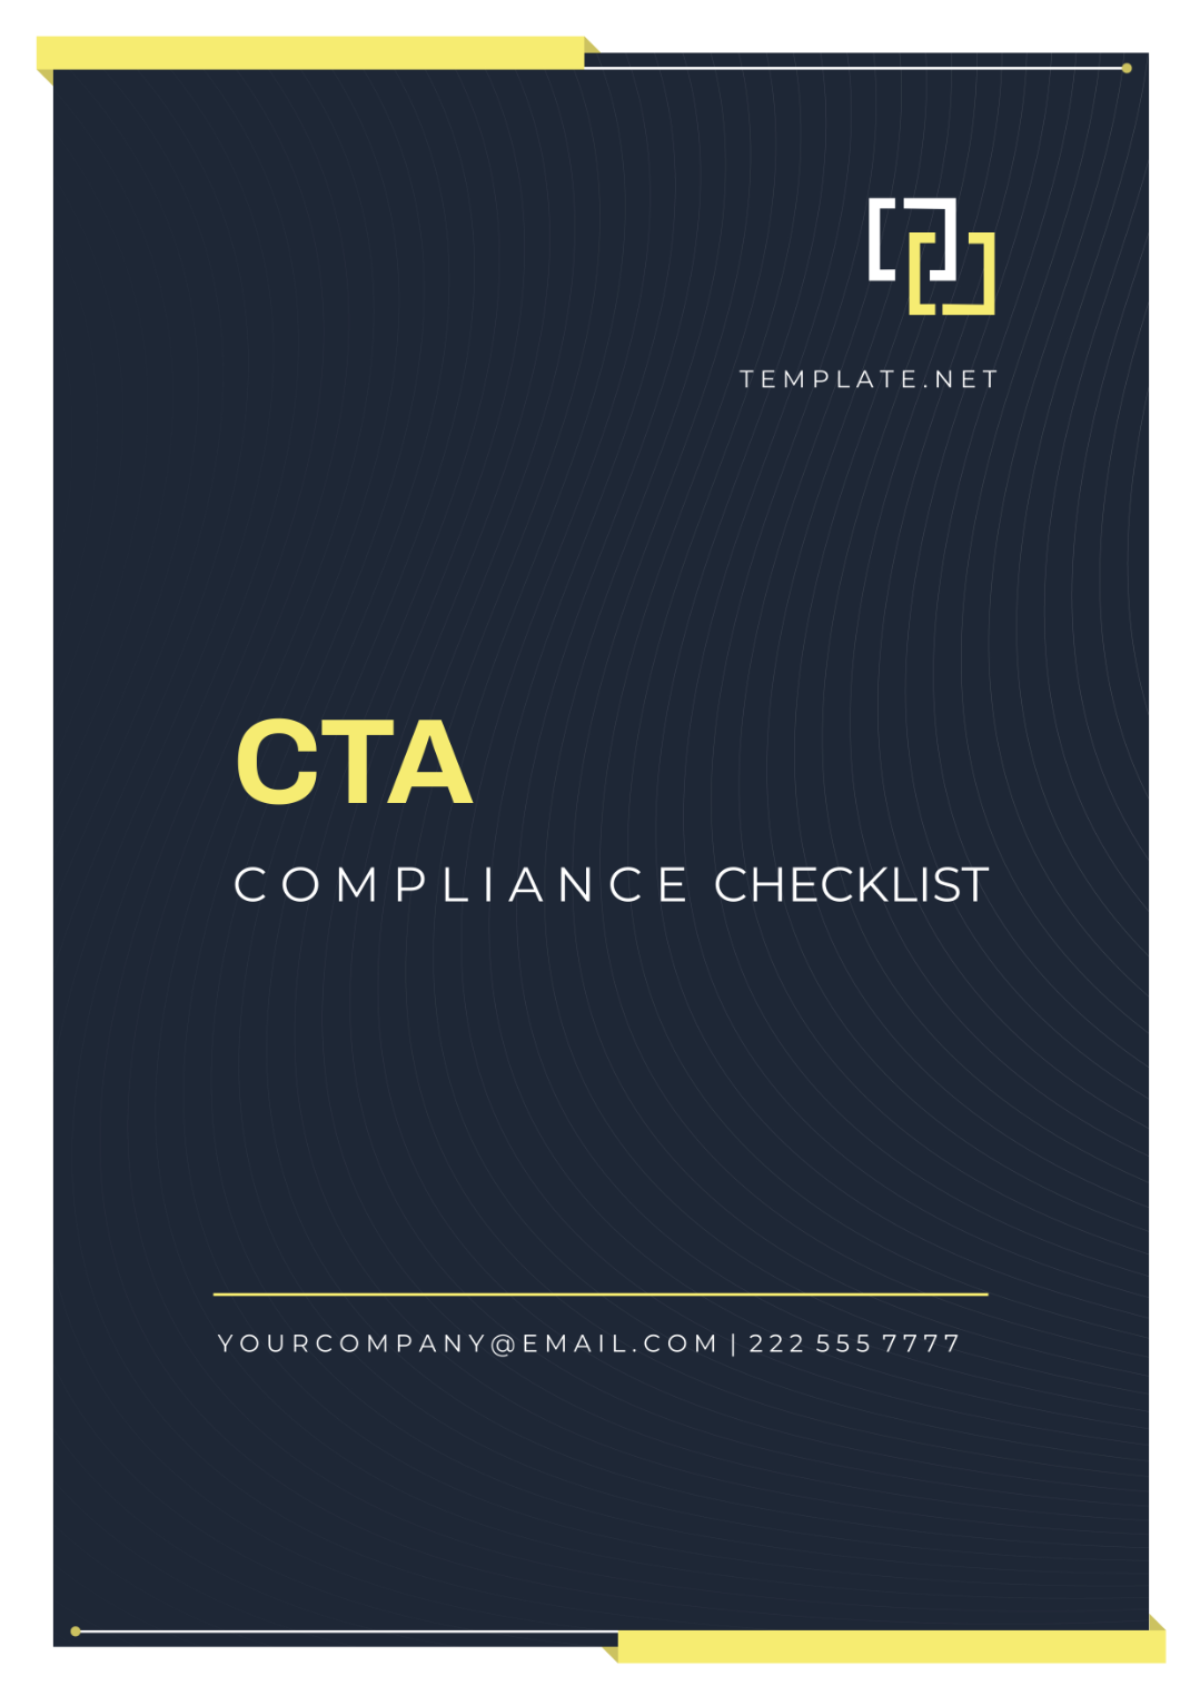 CTA Compliance Checklist Template